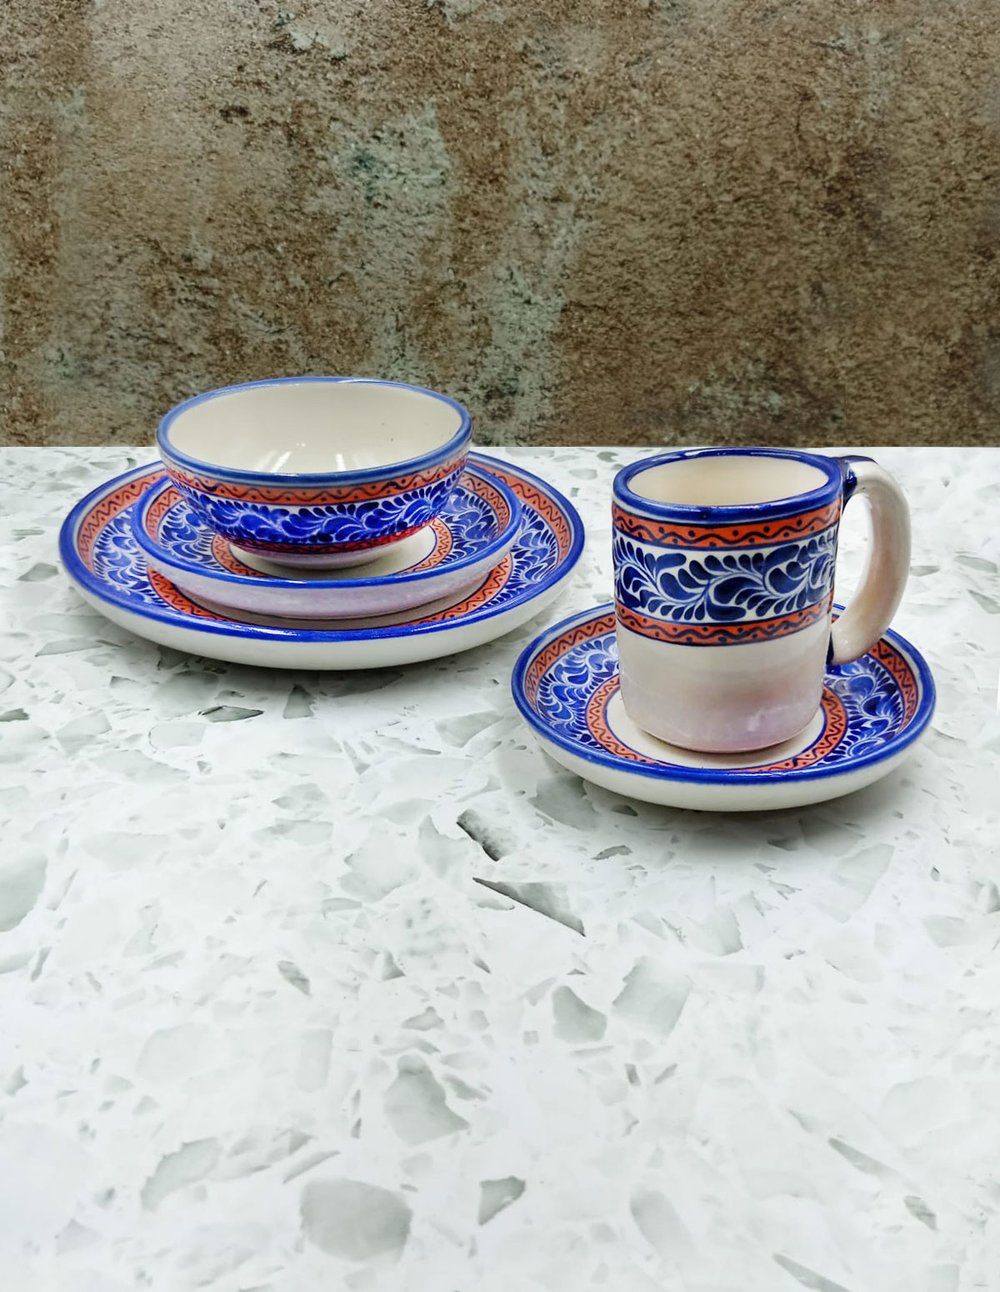 Vajilla de cerámica diseño plumeado azul y motivos en rojo para 6 personas  hecha de manera artesanal — Tikal Arte Mexicano